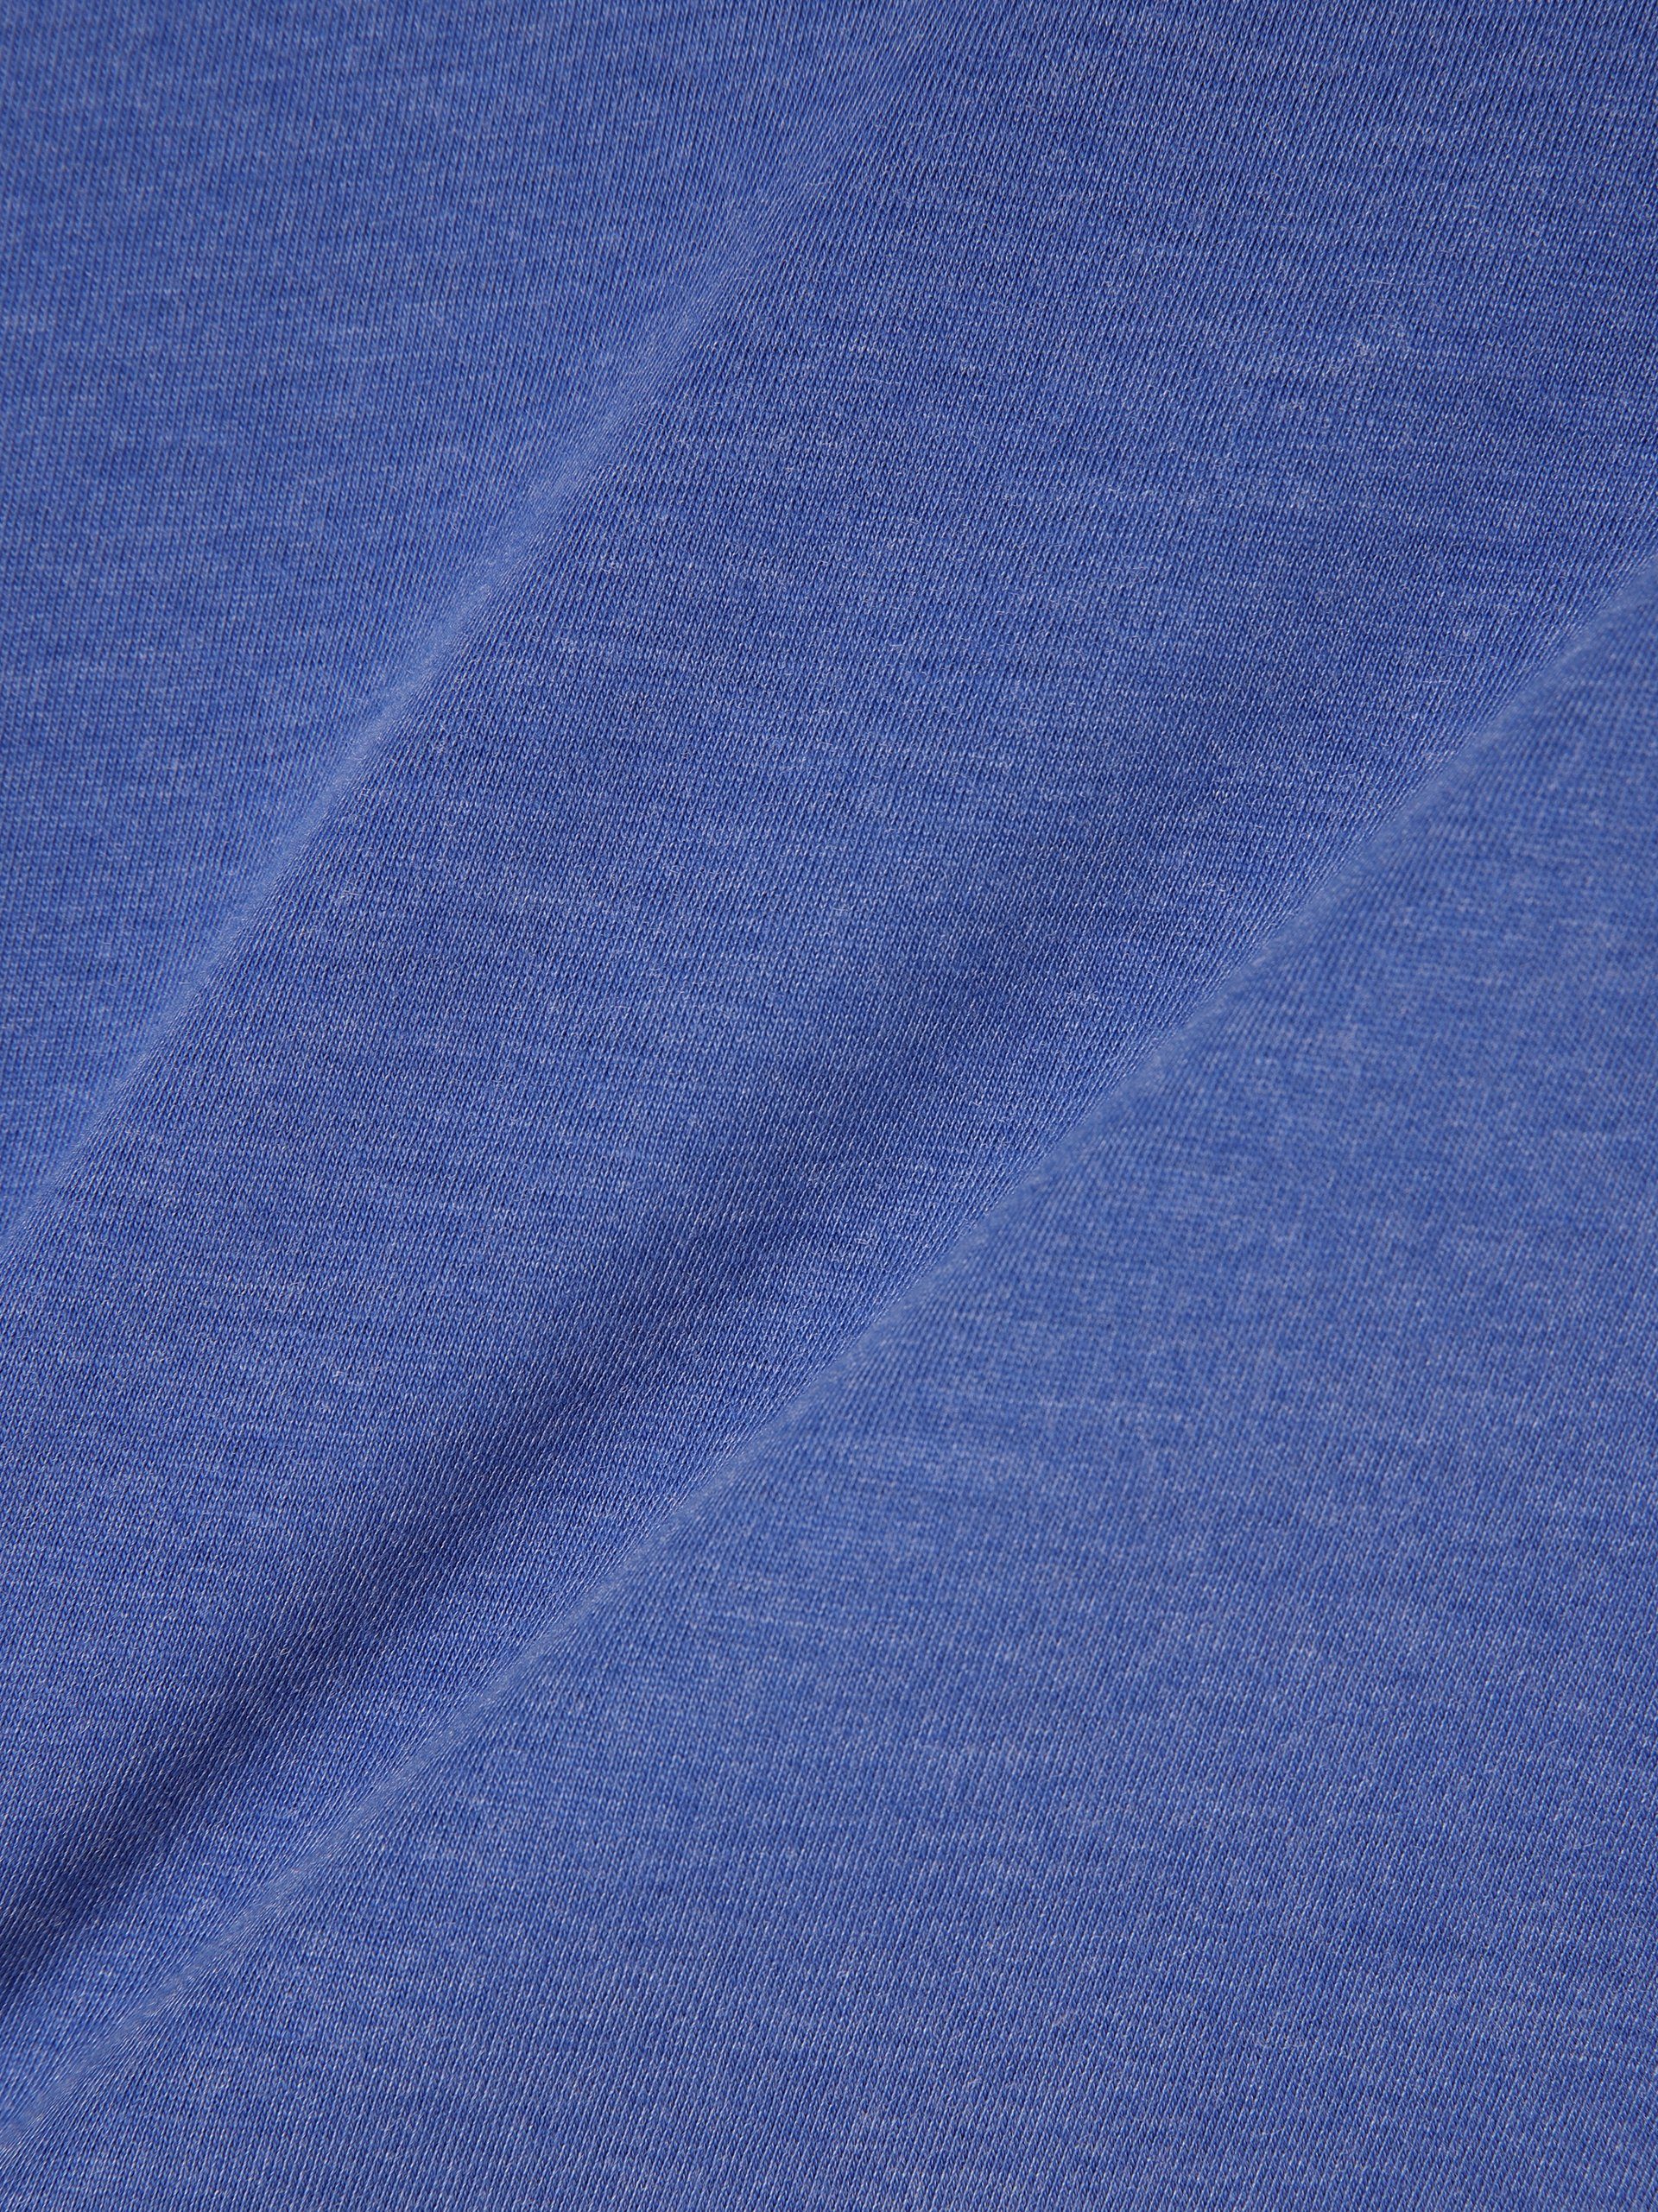 Sundström T-Shirt Nils blau